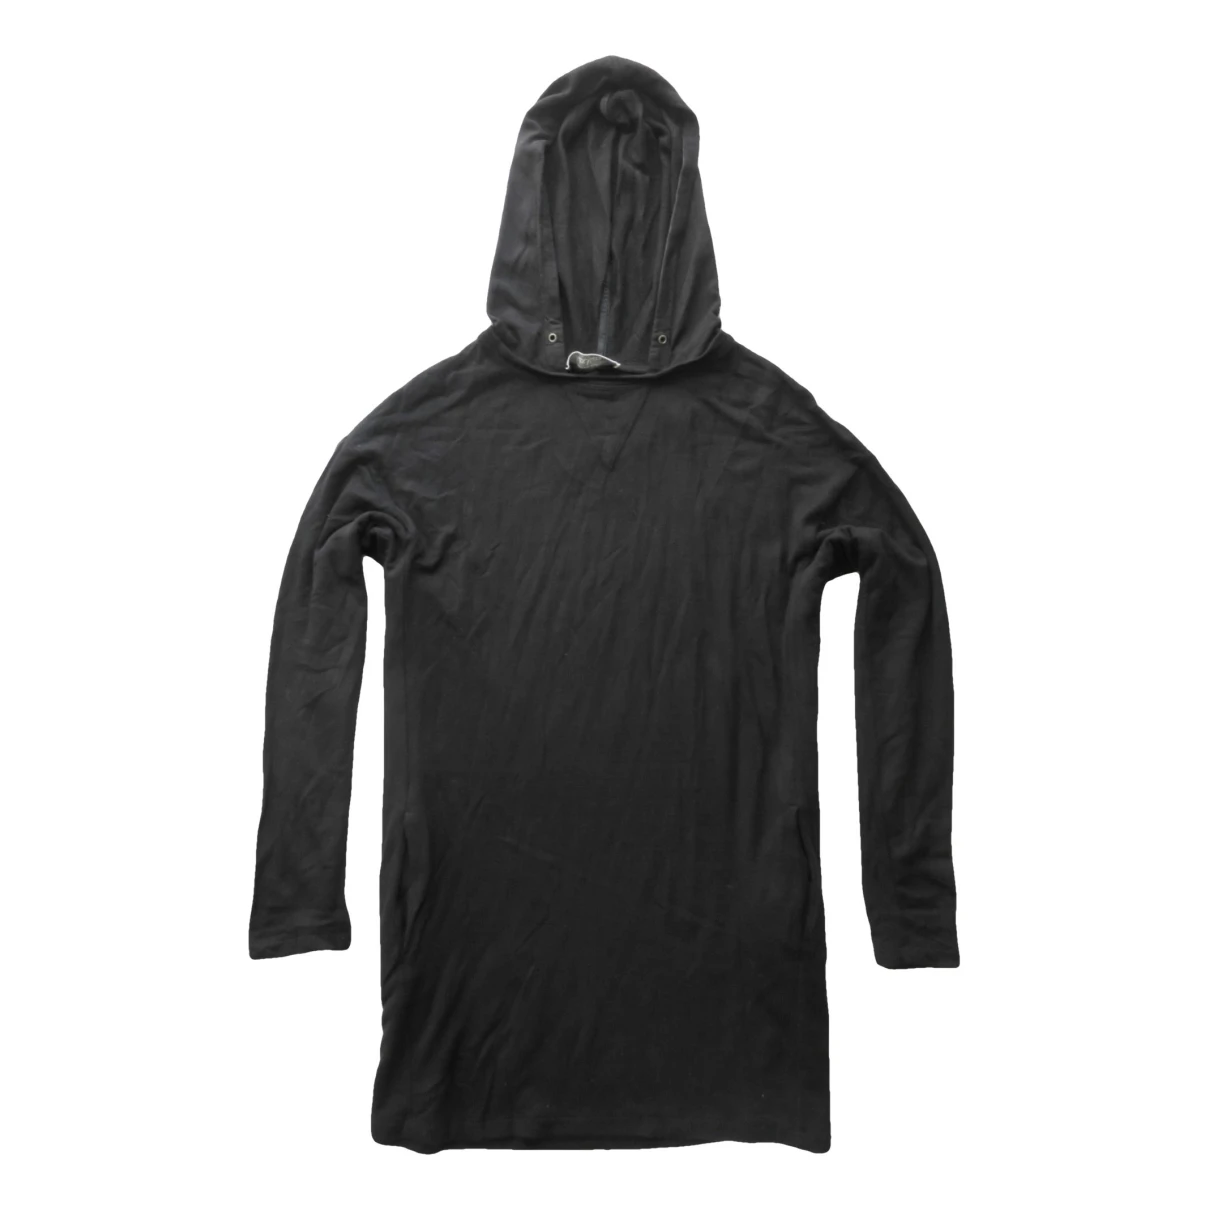 Pre-owned Max Mara Sweatshirt In Black